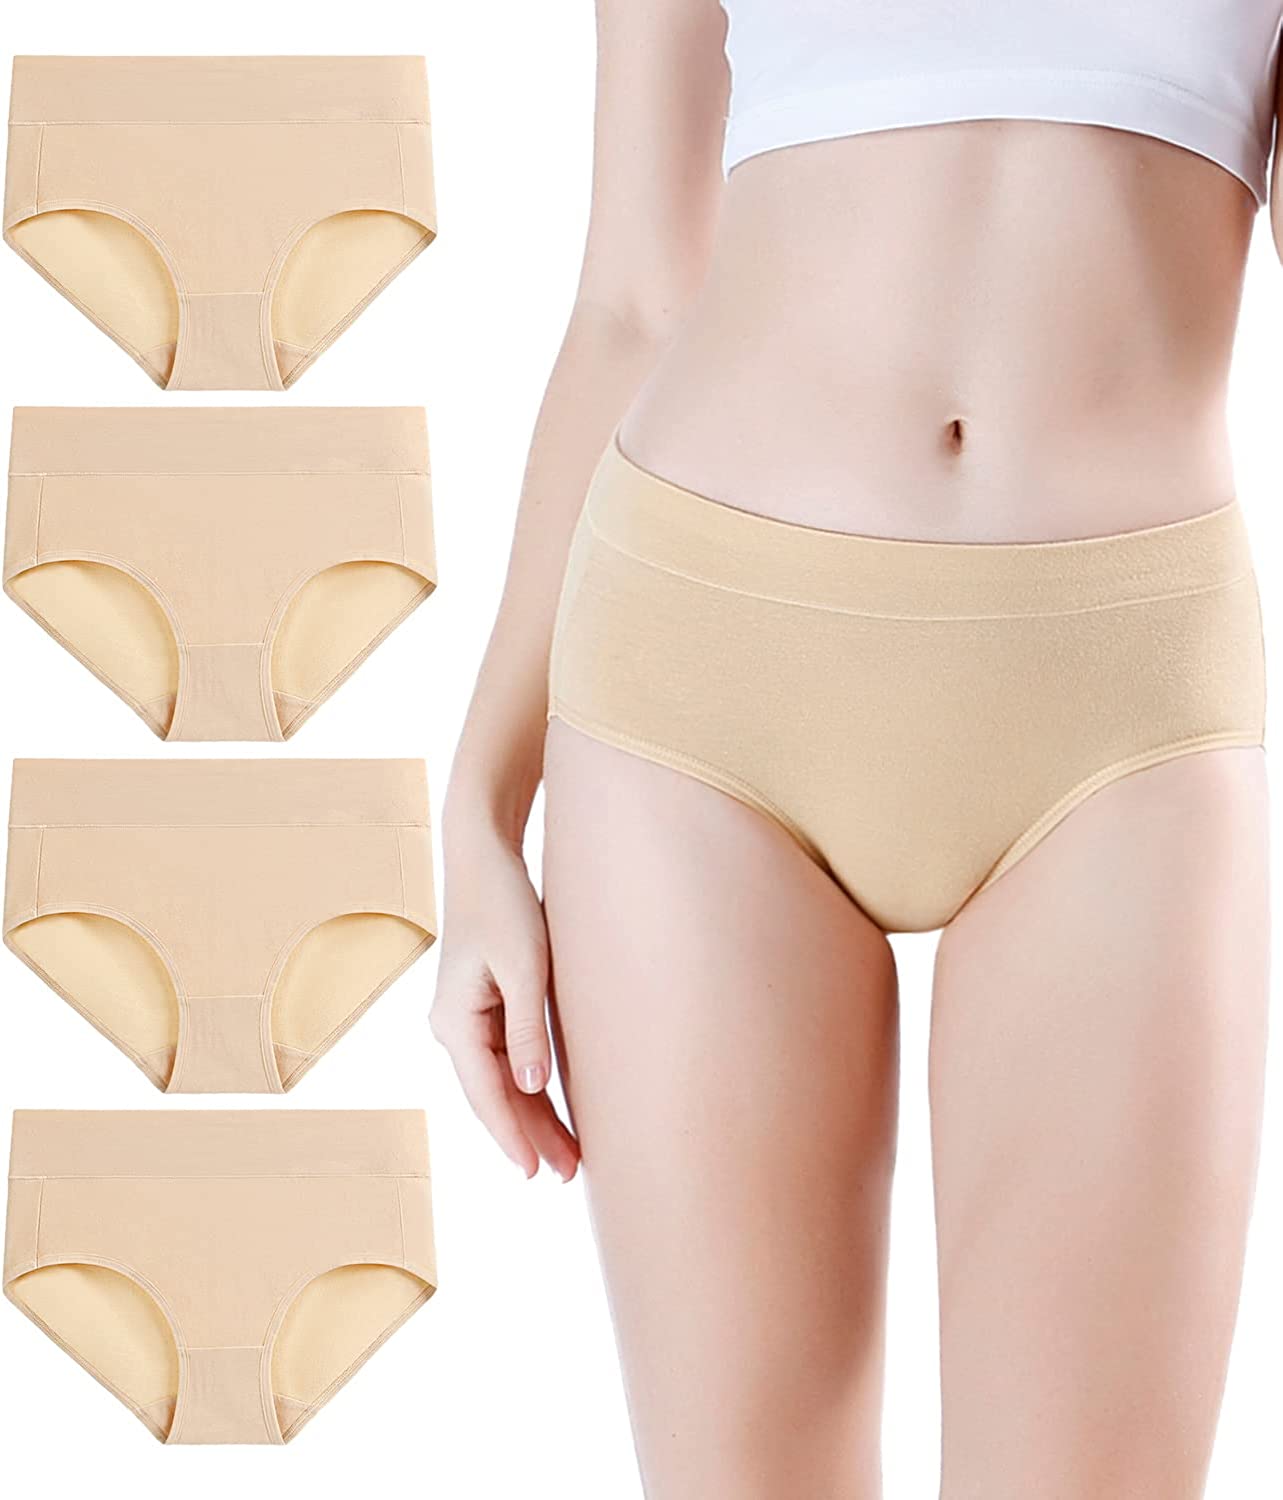 wirarpa Women's Cotton Stretch Underwear Soft Mid Rise Briefs Underpants 4  Pack